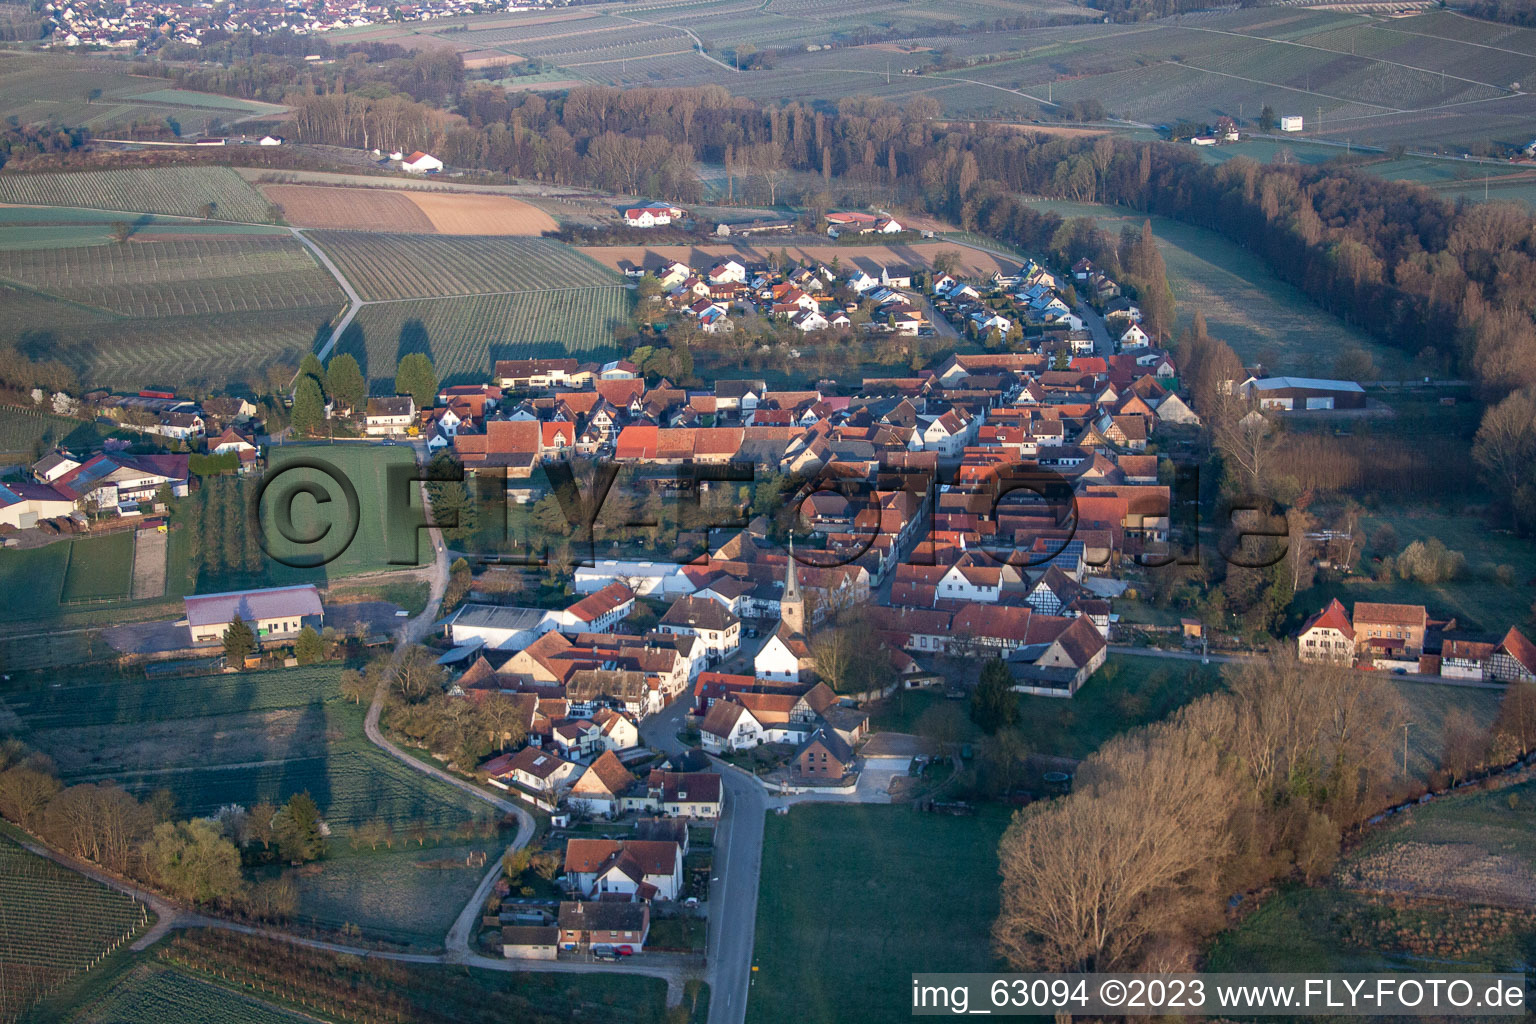 District Klingen in Heuchelheim-Klingen in the state Rhineland-Palatinate, Germany seen from above